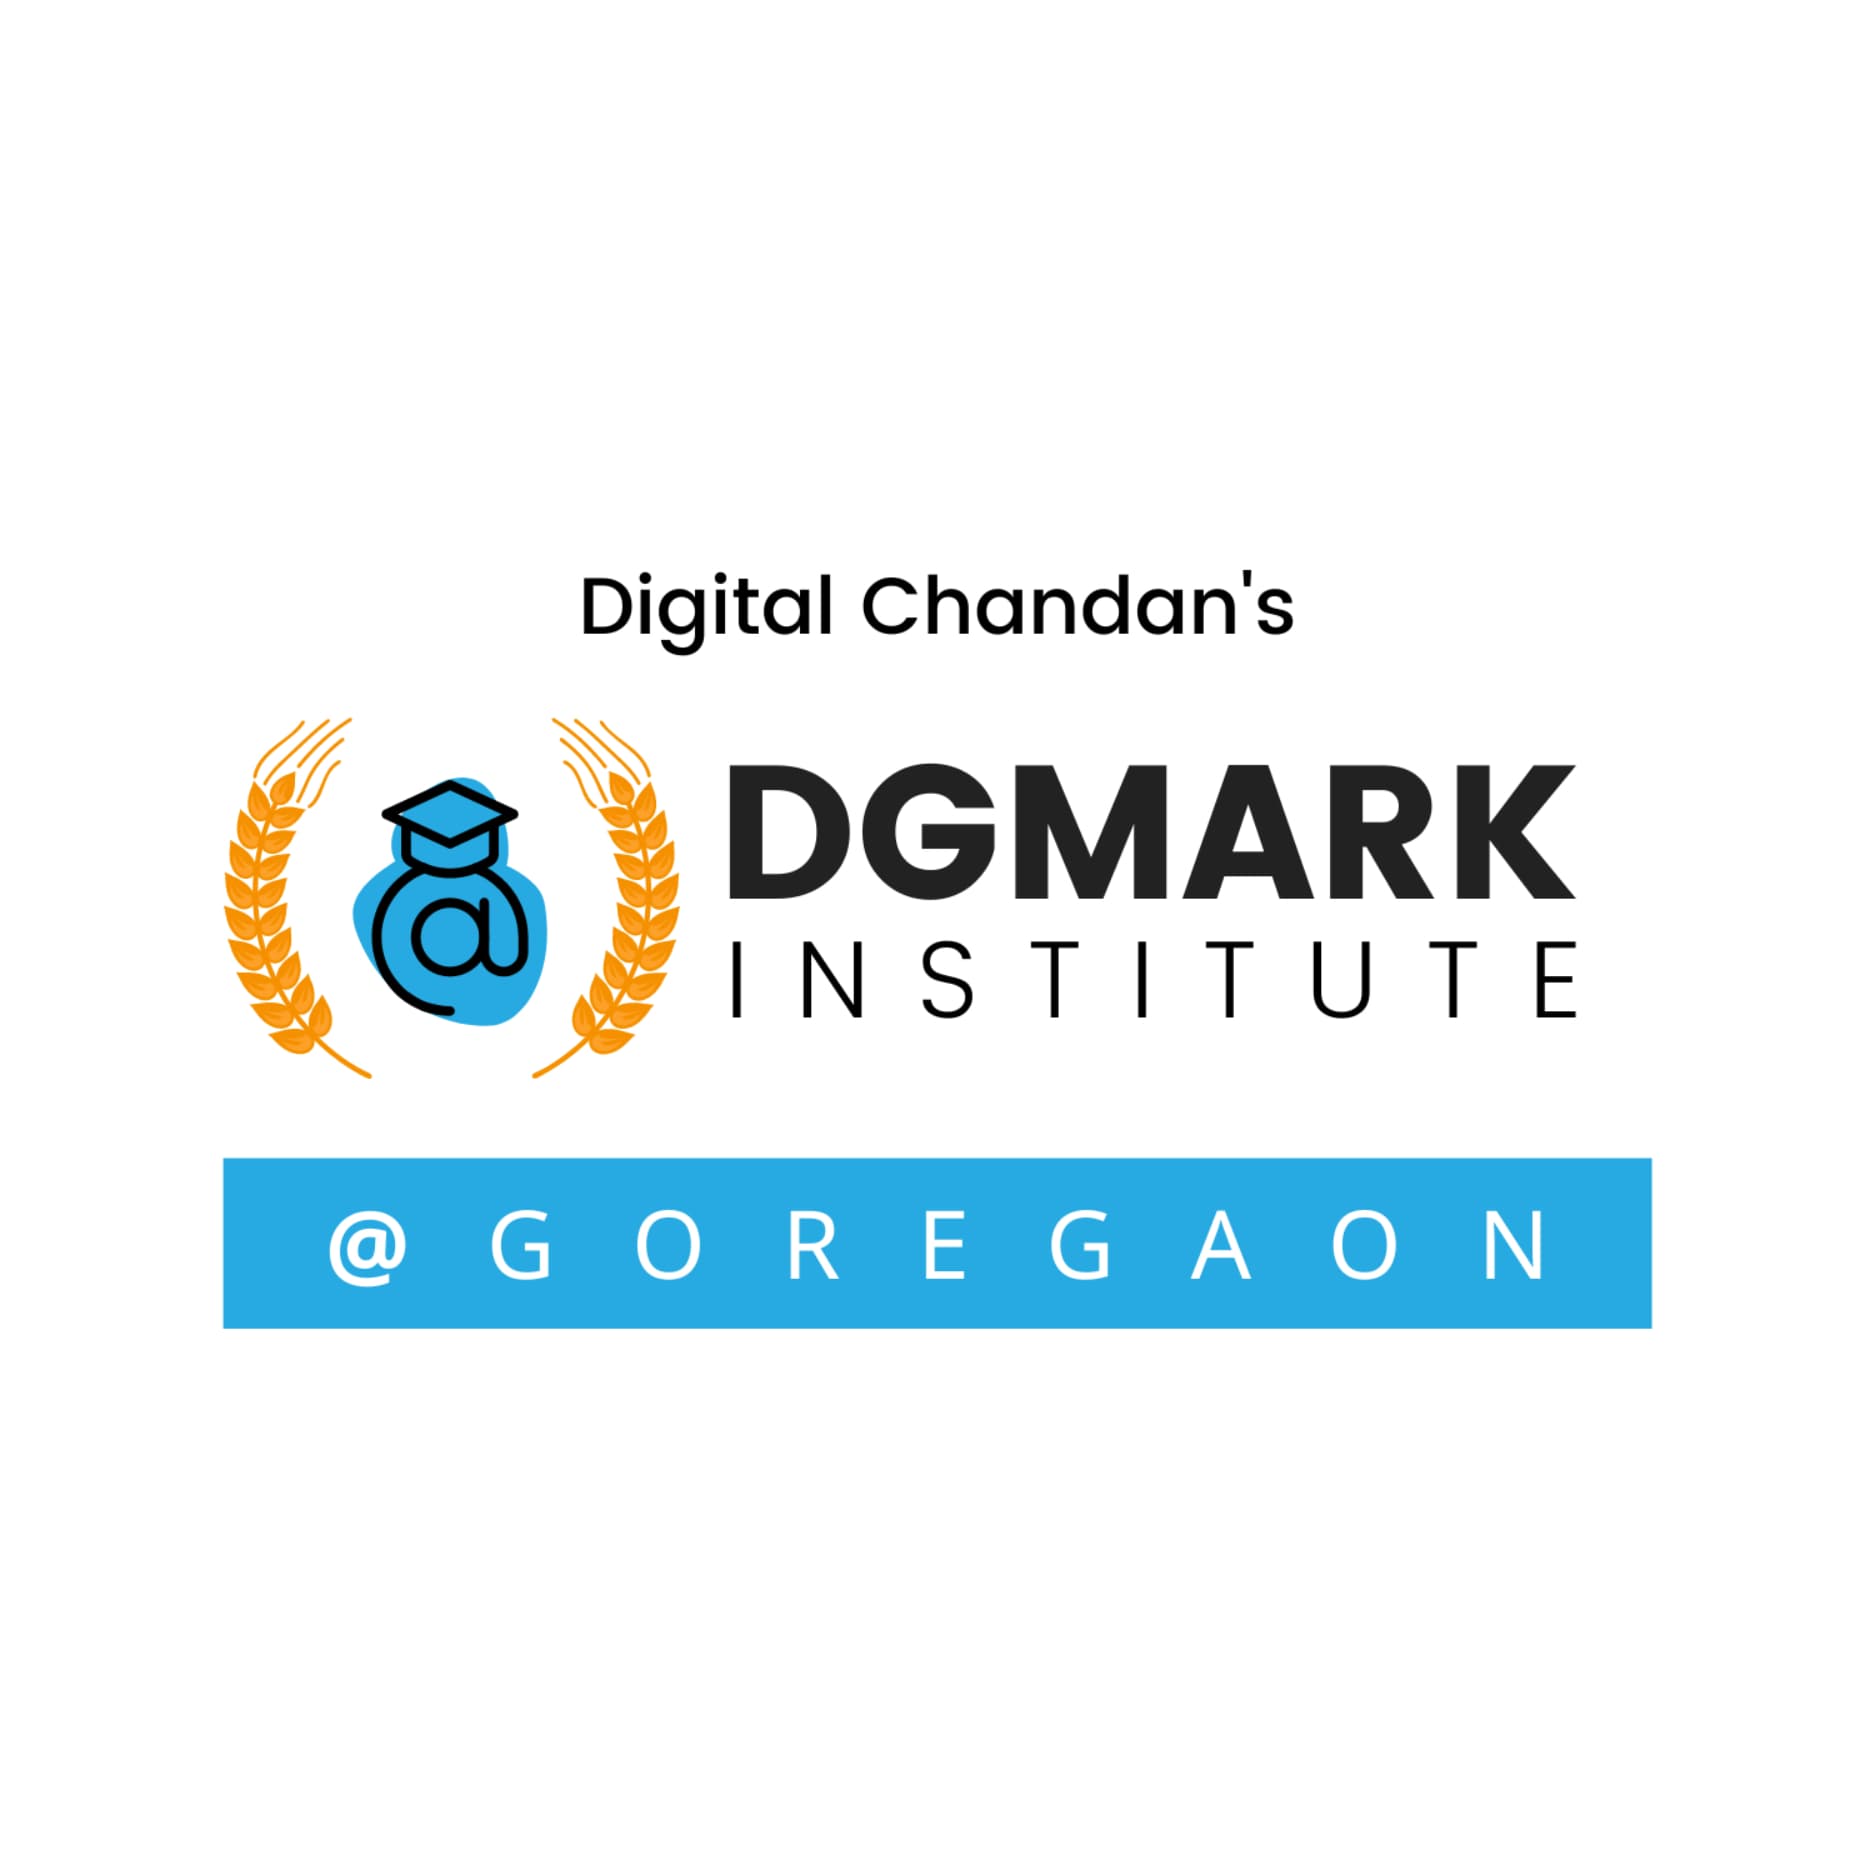 DGmark Institute's logo